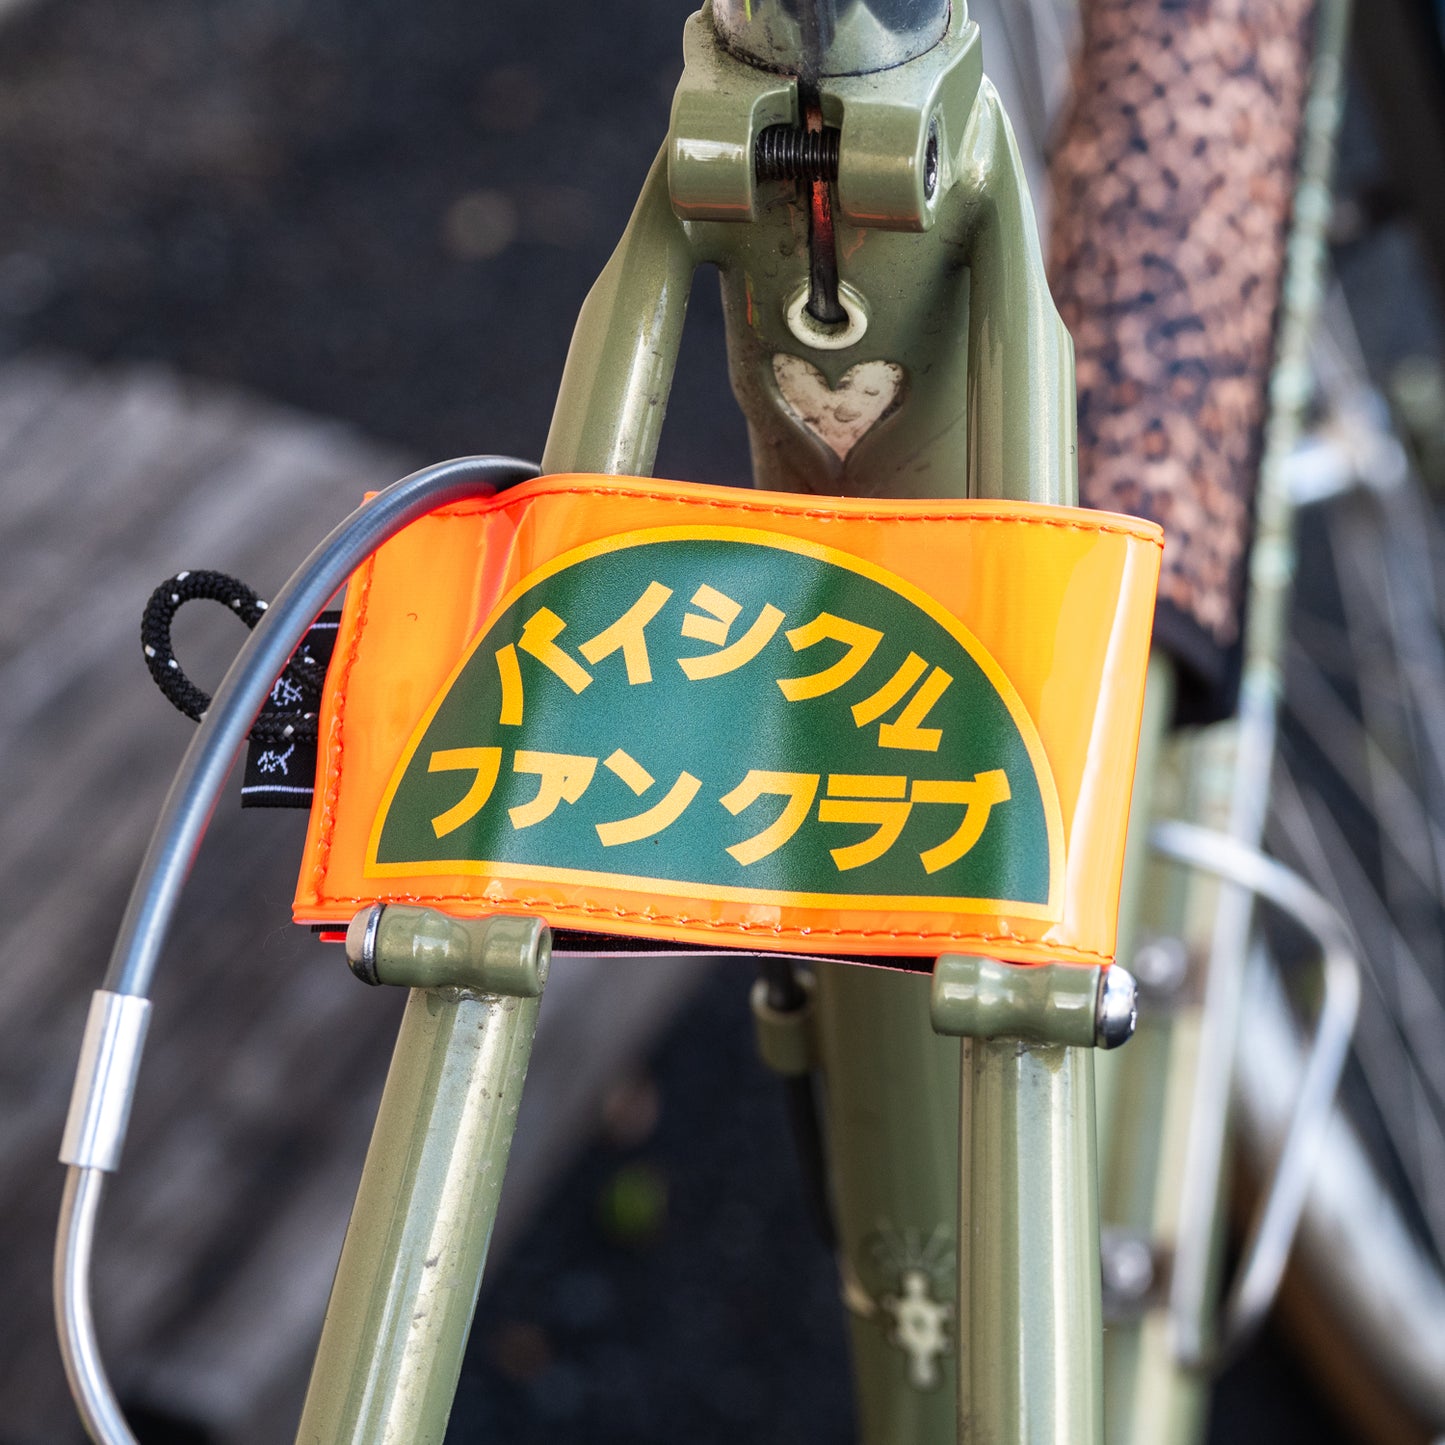 Bicycle Fan Club x Blue Lug Sandwich Reflector